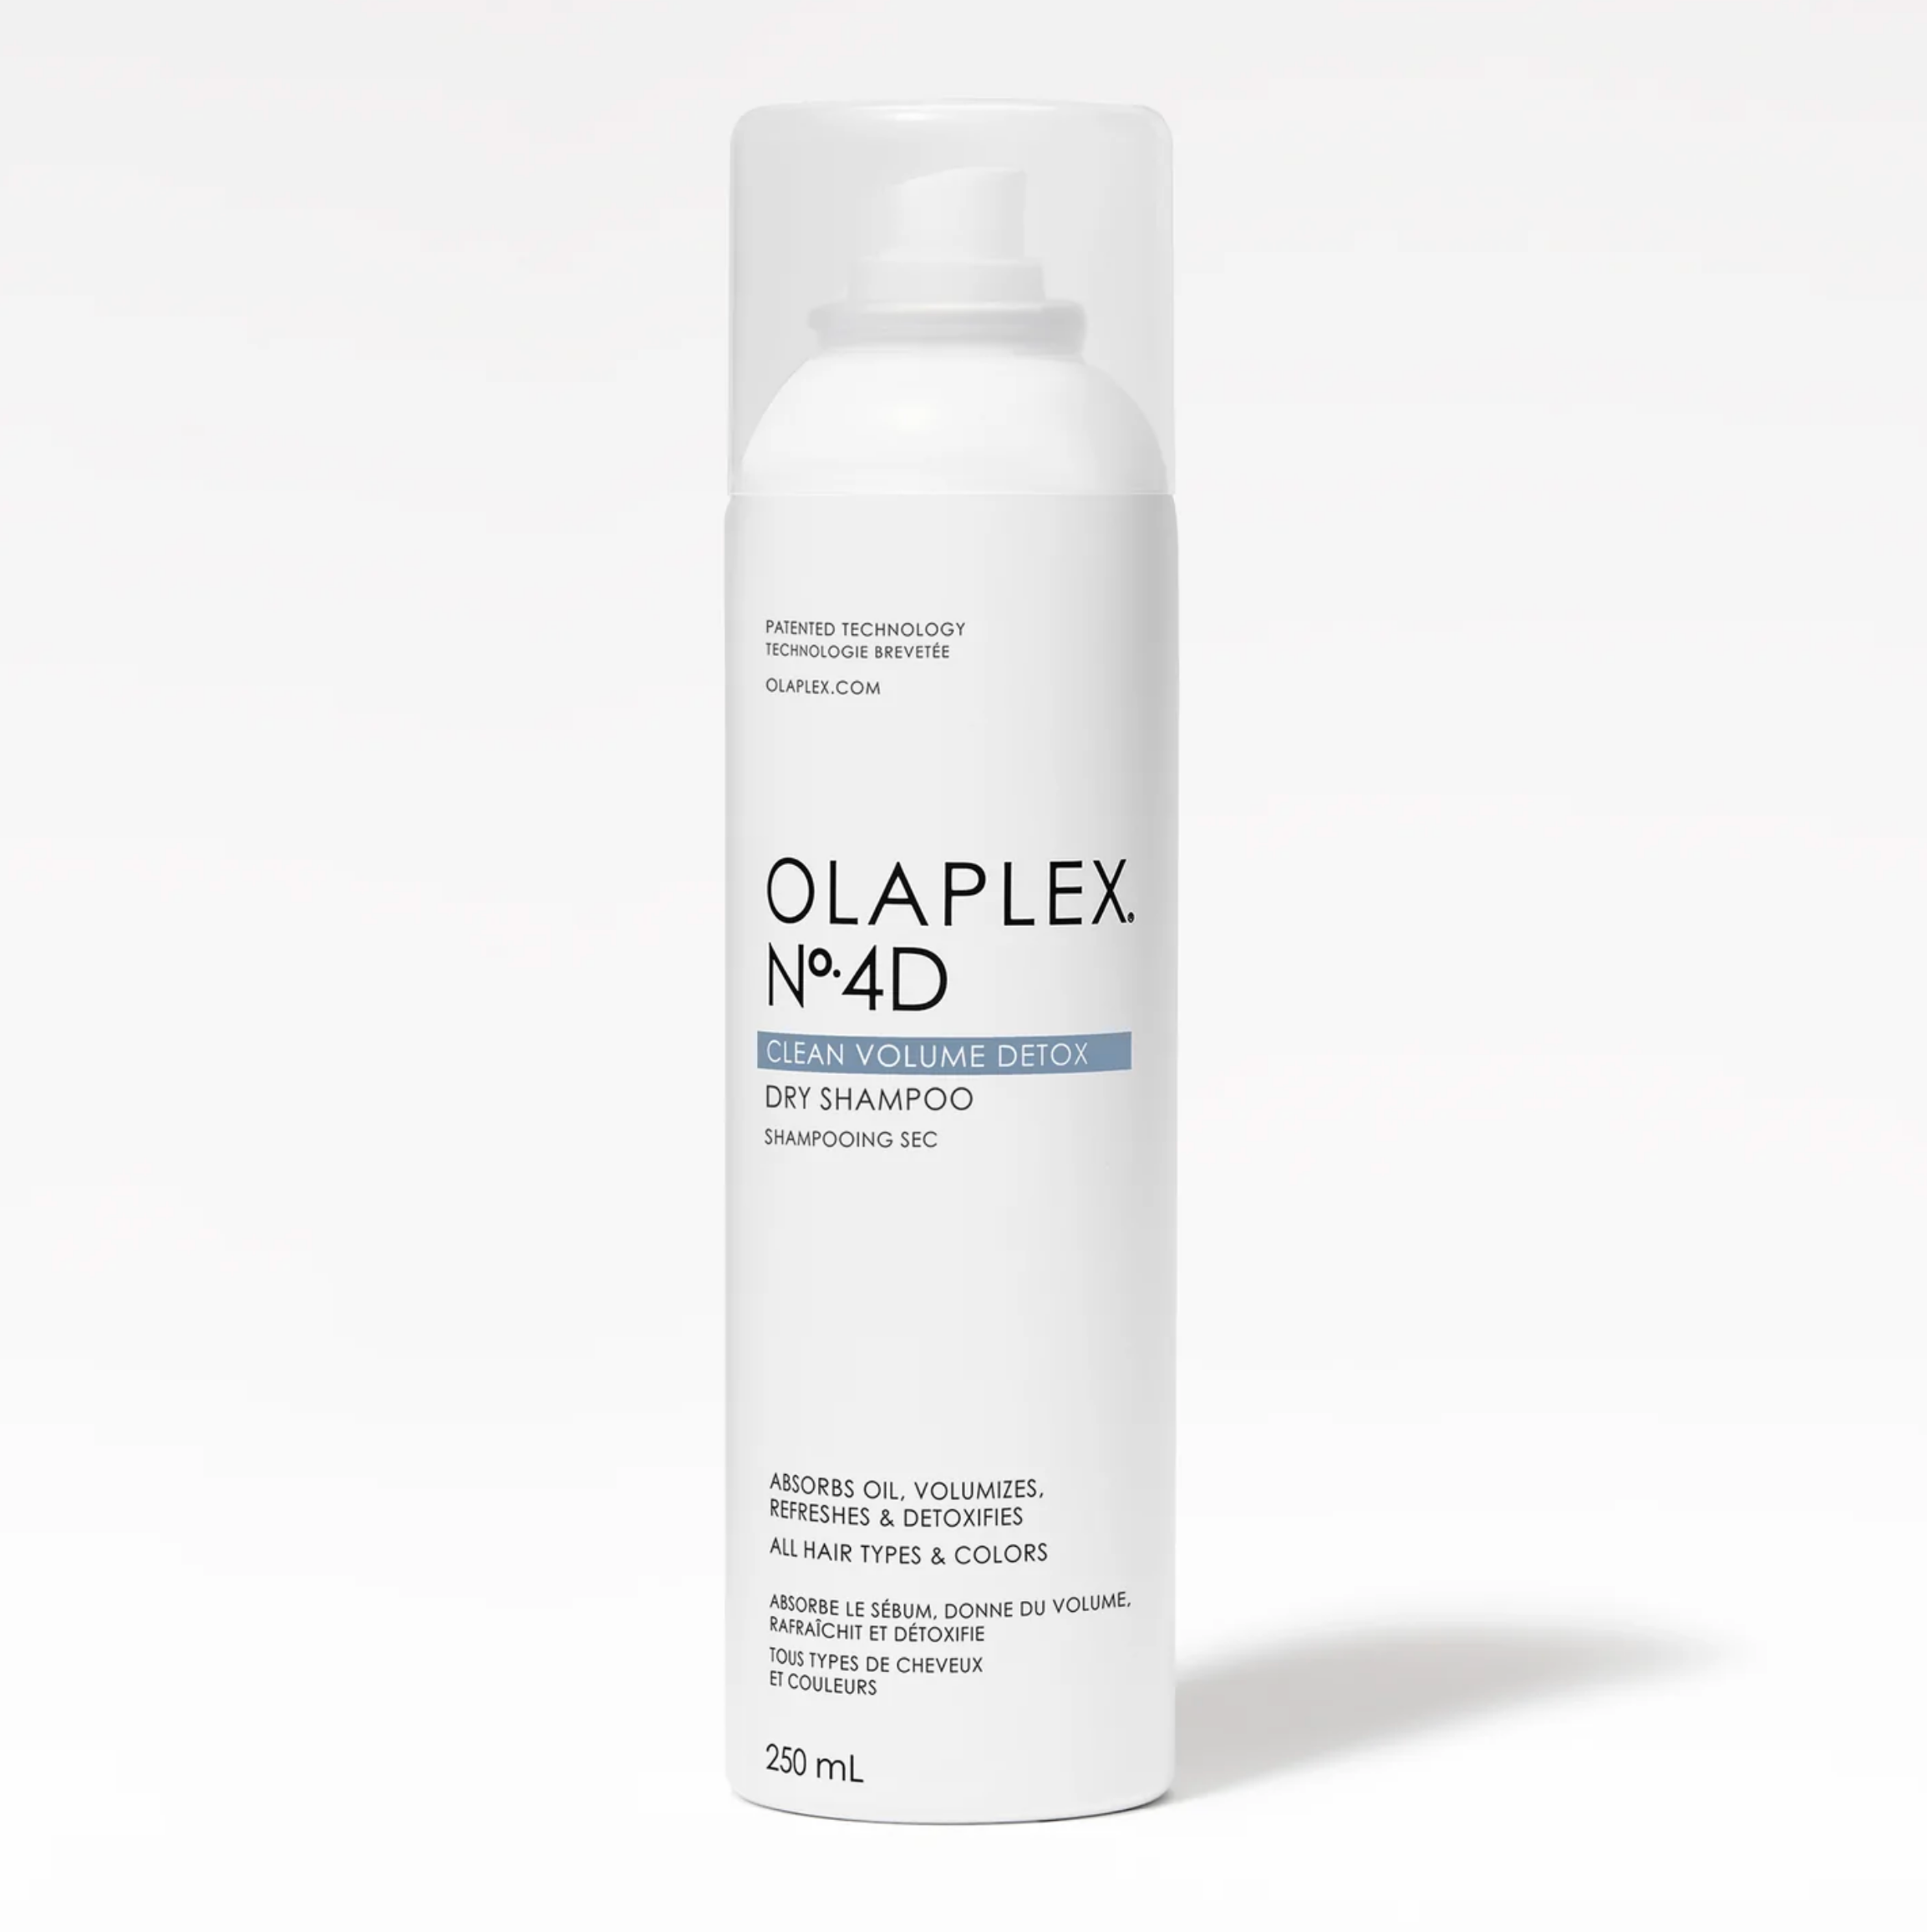 Shampooing sec absorbe le sébum, donne du volume tous types de cheveux et couleurs Olaplex N°4D Dry Shampoo clean volume detox - Crème Salon